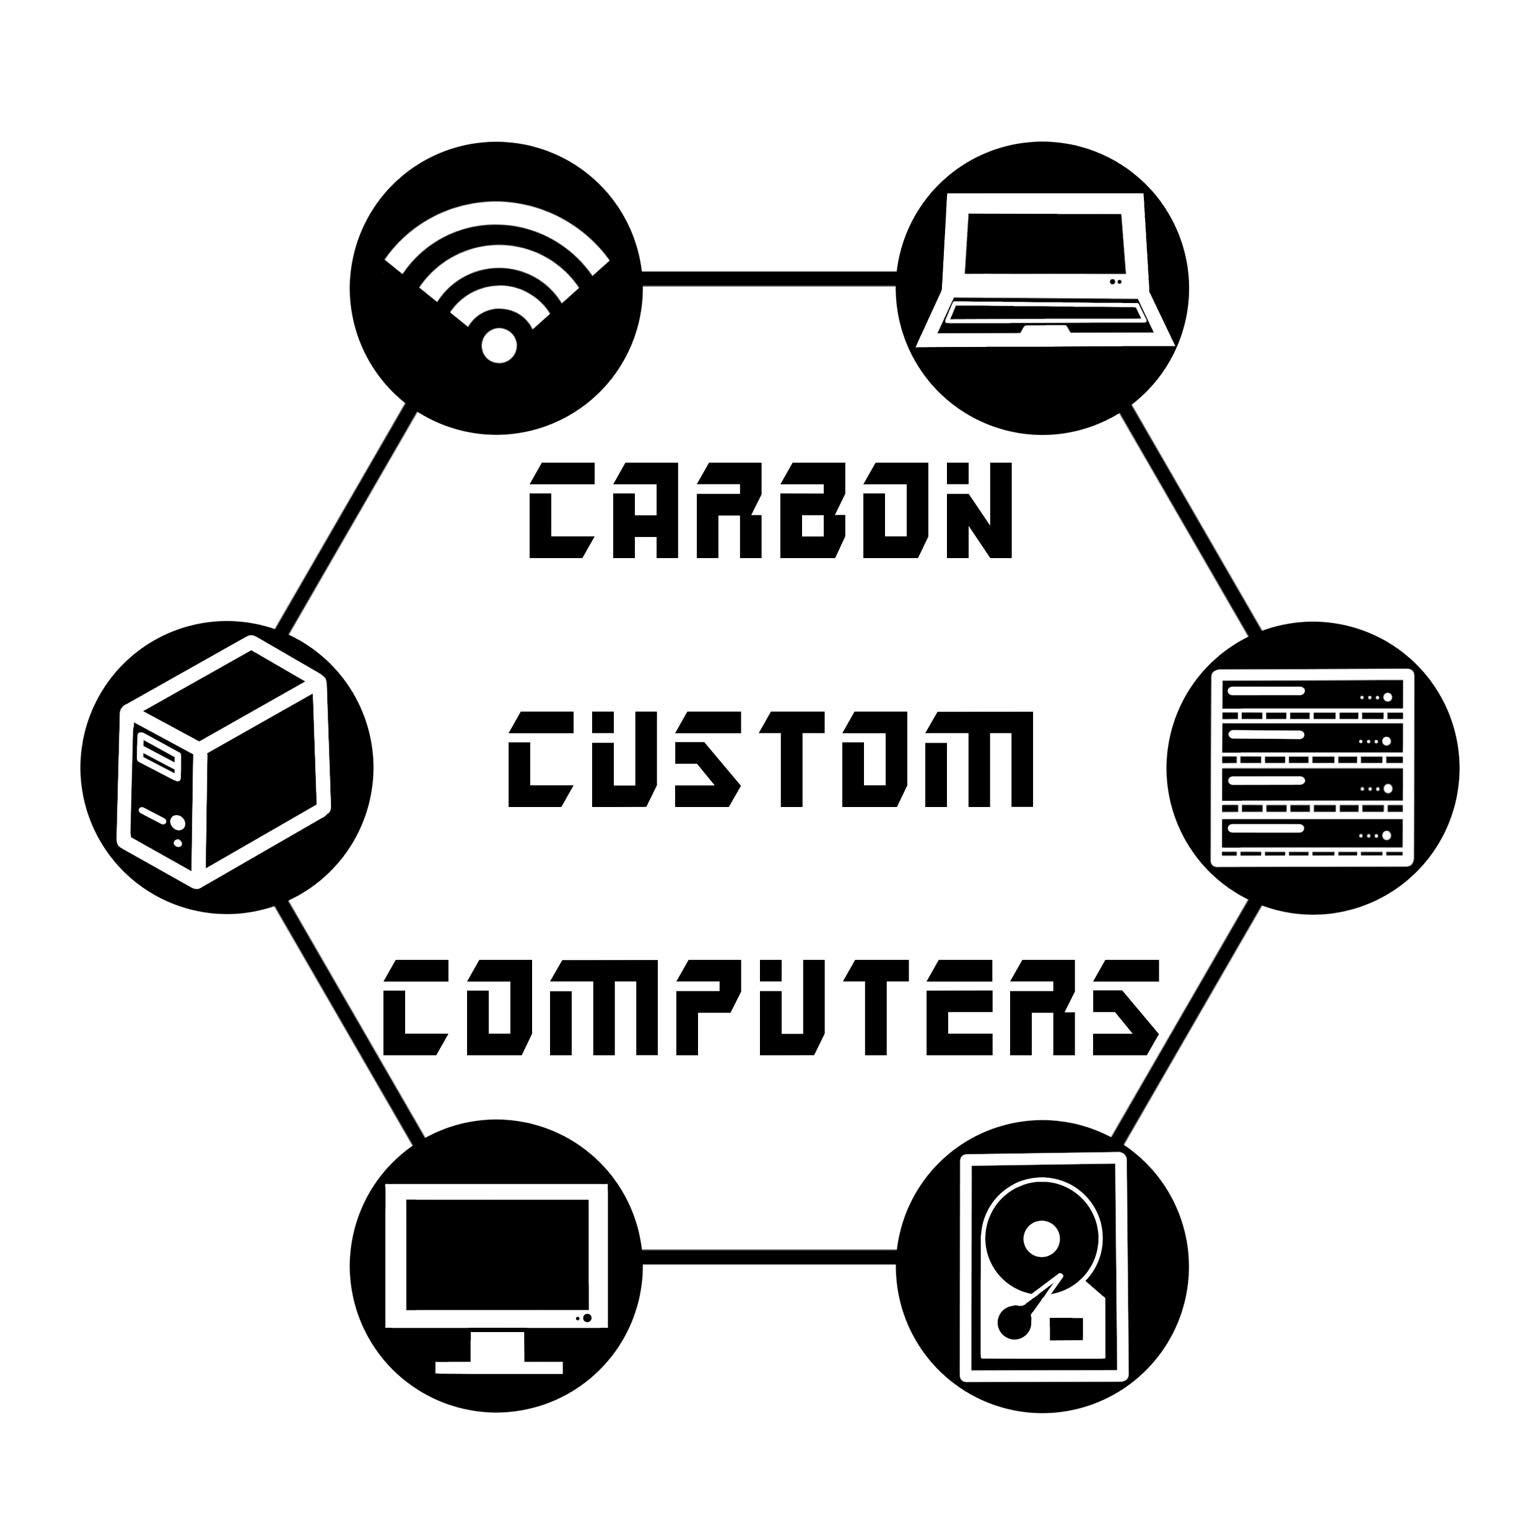 Carbon Custom Computers - RECERTIFIED LAPTOP/DESKTOP